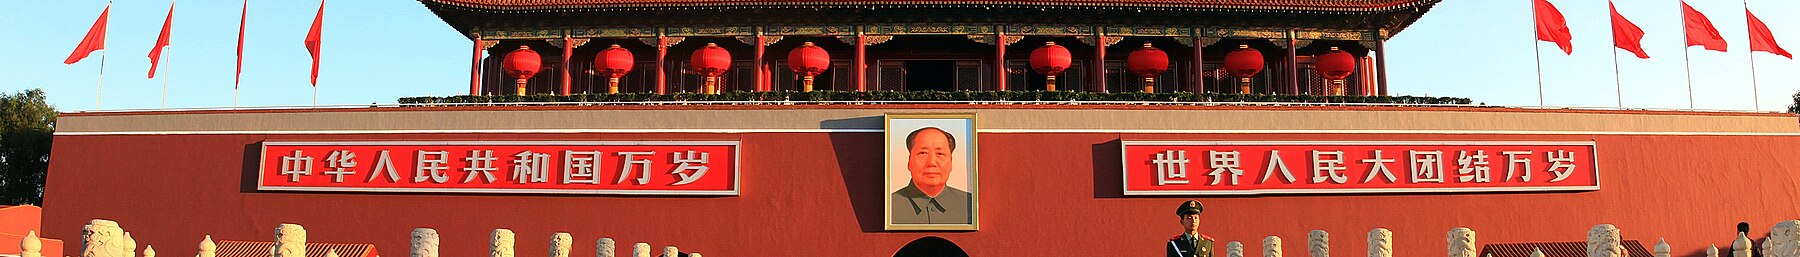 Beijing banner Tiananmen.jpg